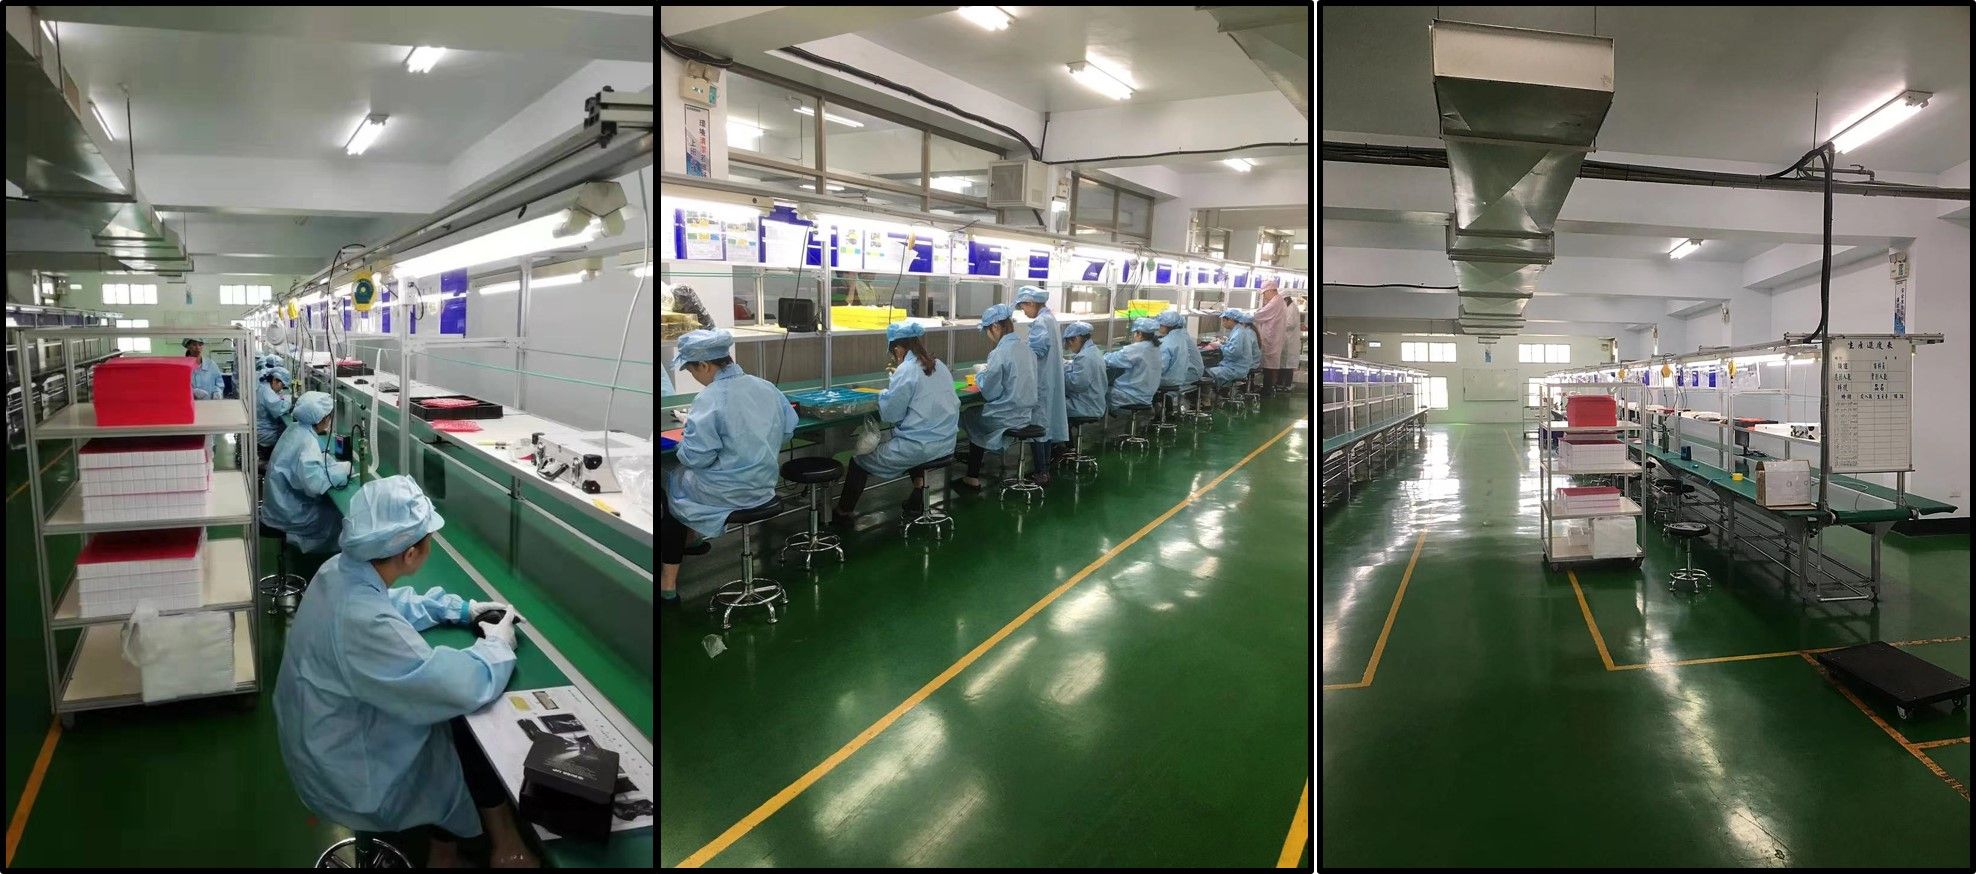 台湾系统组装生产线